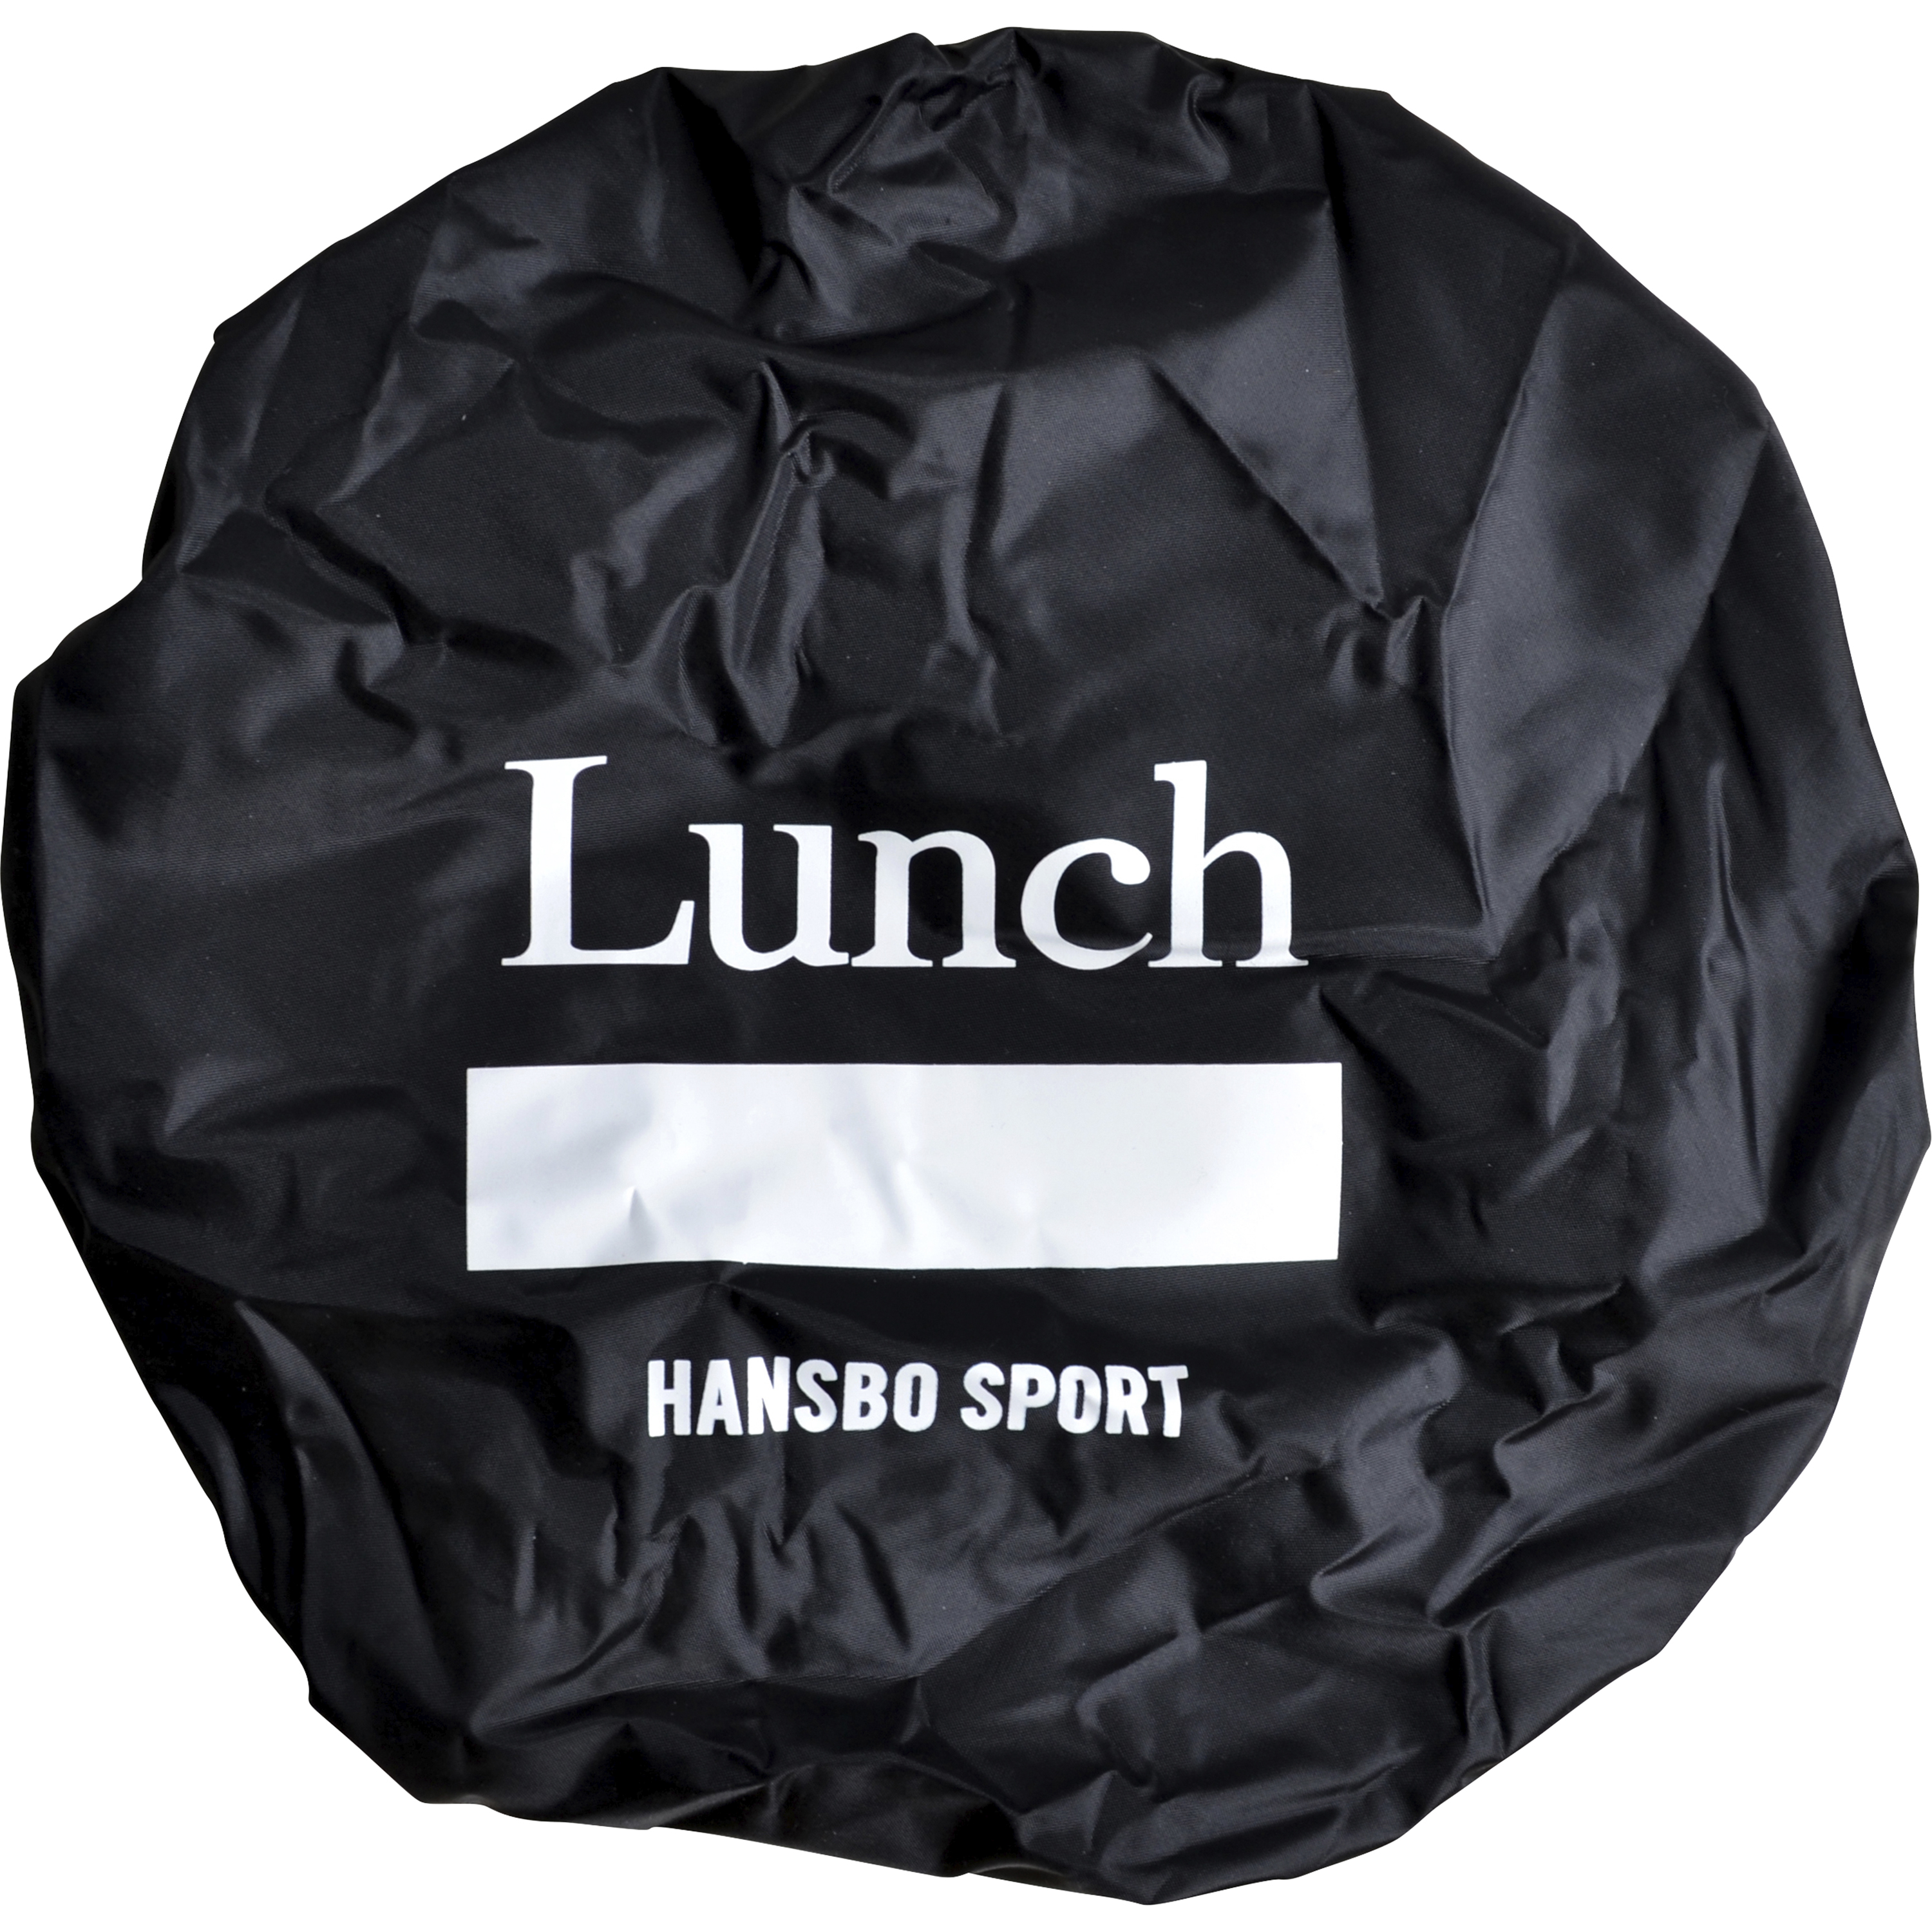 Hinköverdrag Hansbo Sport Lunch Svart 33cm